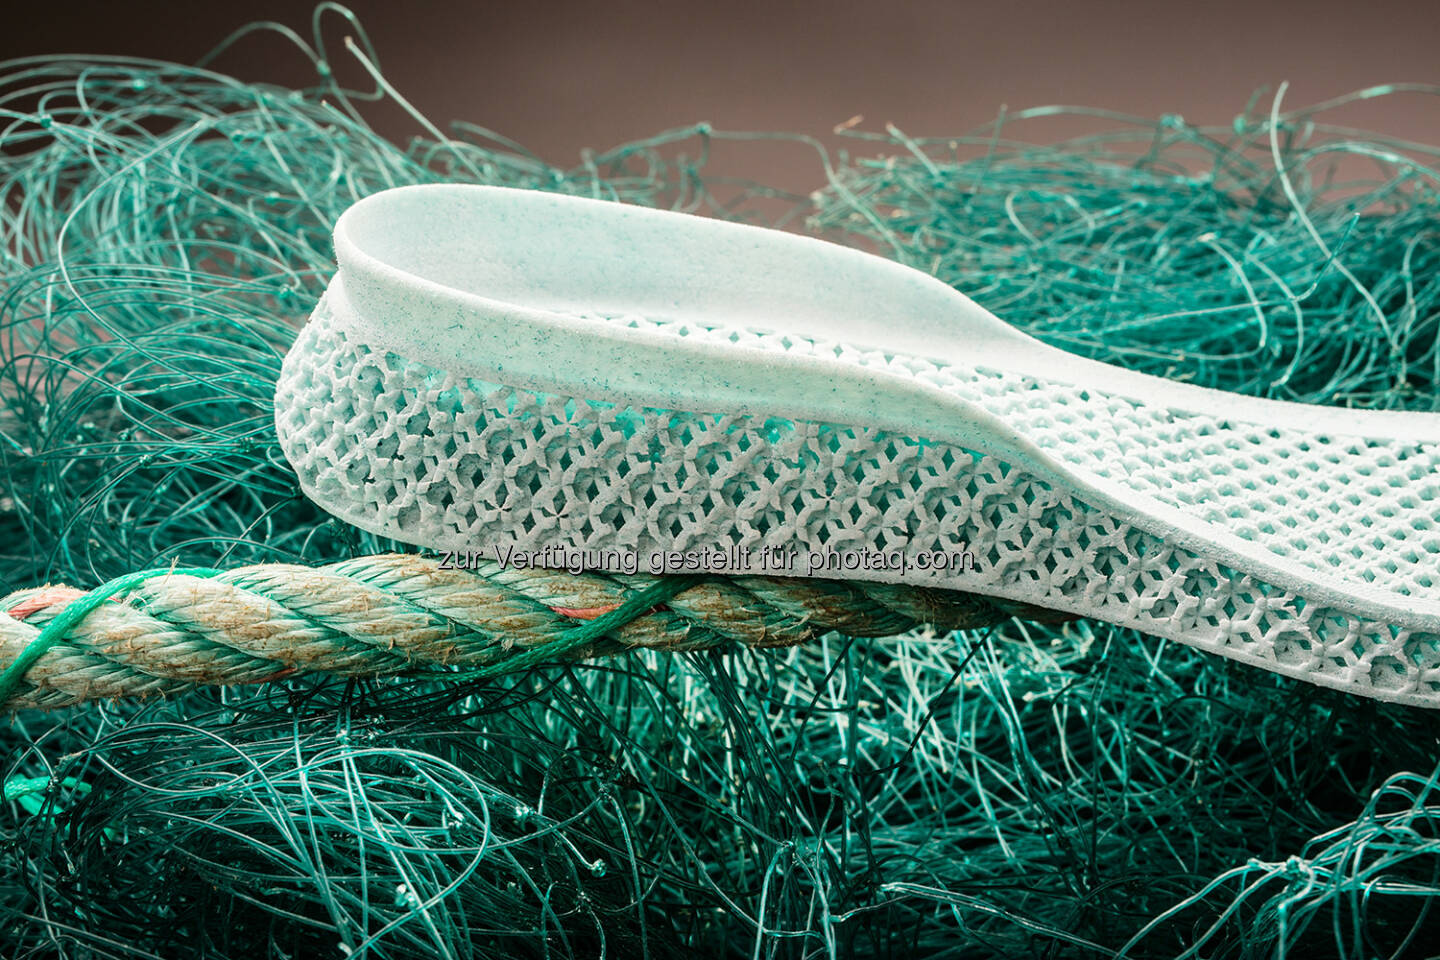 Schuh mit Zwischensohle aus Meeresplastik im 3D-Druck gefertigt | adidas und Parley for the Oceans setzen in Paris ein Zeichen und präsentieren strategisches Nachhaltigkeitsprojekt anlässlich des Klimagipfels COP21 | Fotocredit adidas & Parley for the Oceans